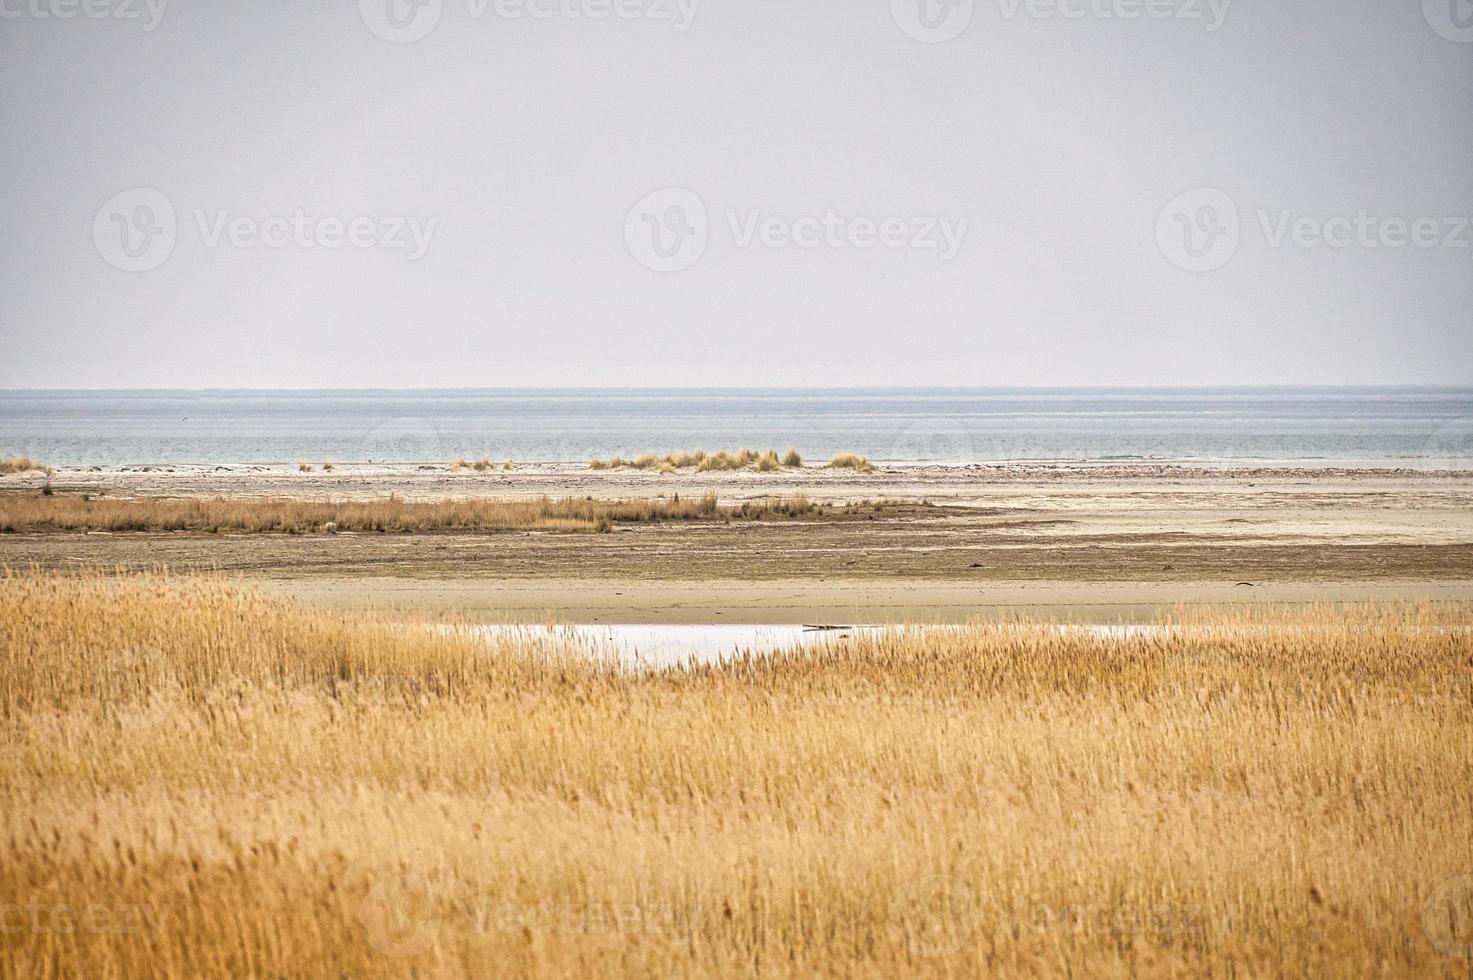 pramort di avvistamento degli uccelli sui darss. ampio paesaggio con vista sul bodden e sul mar baltico. foto